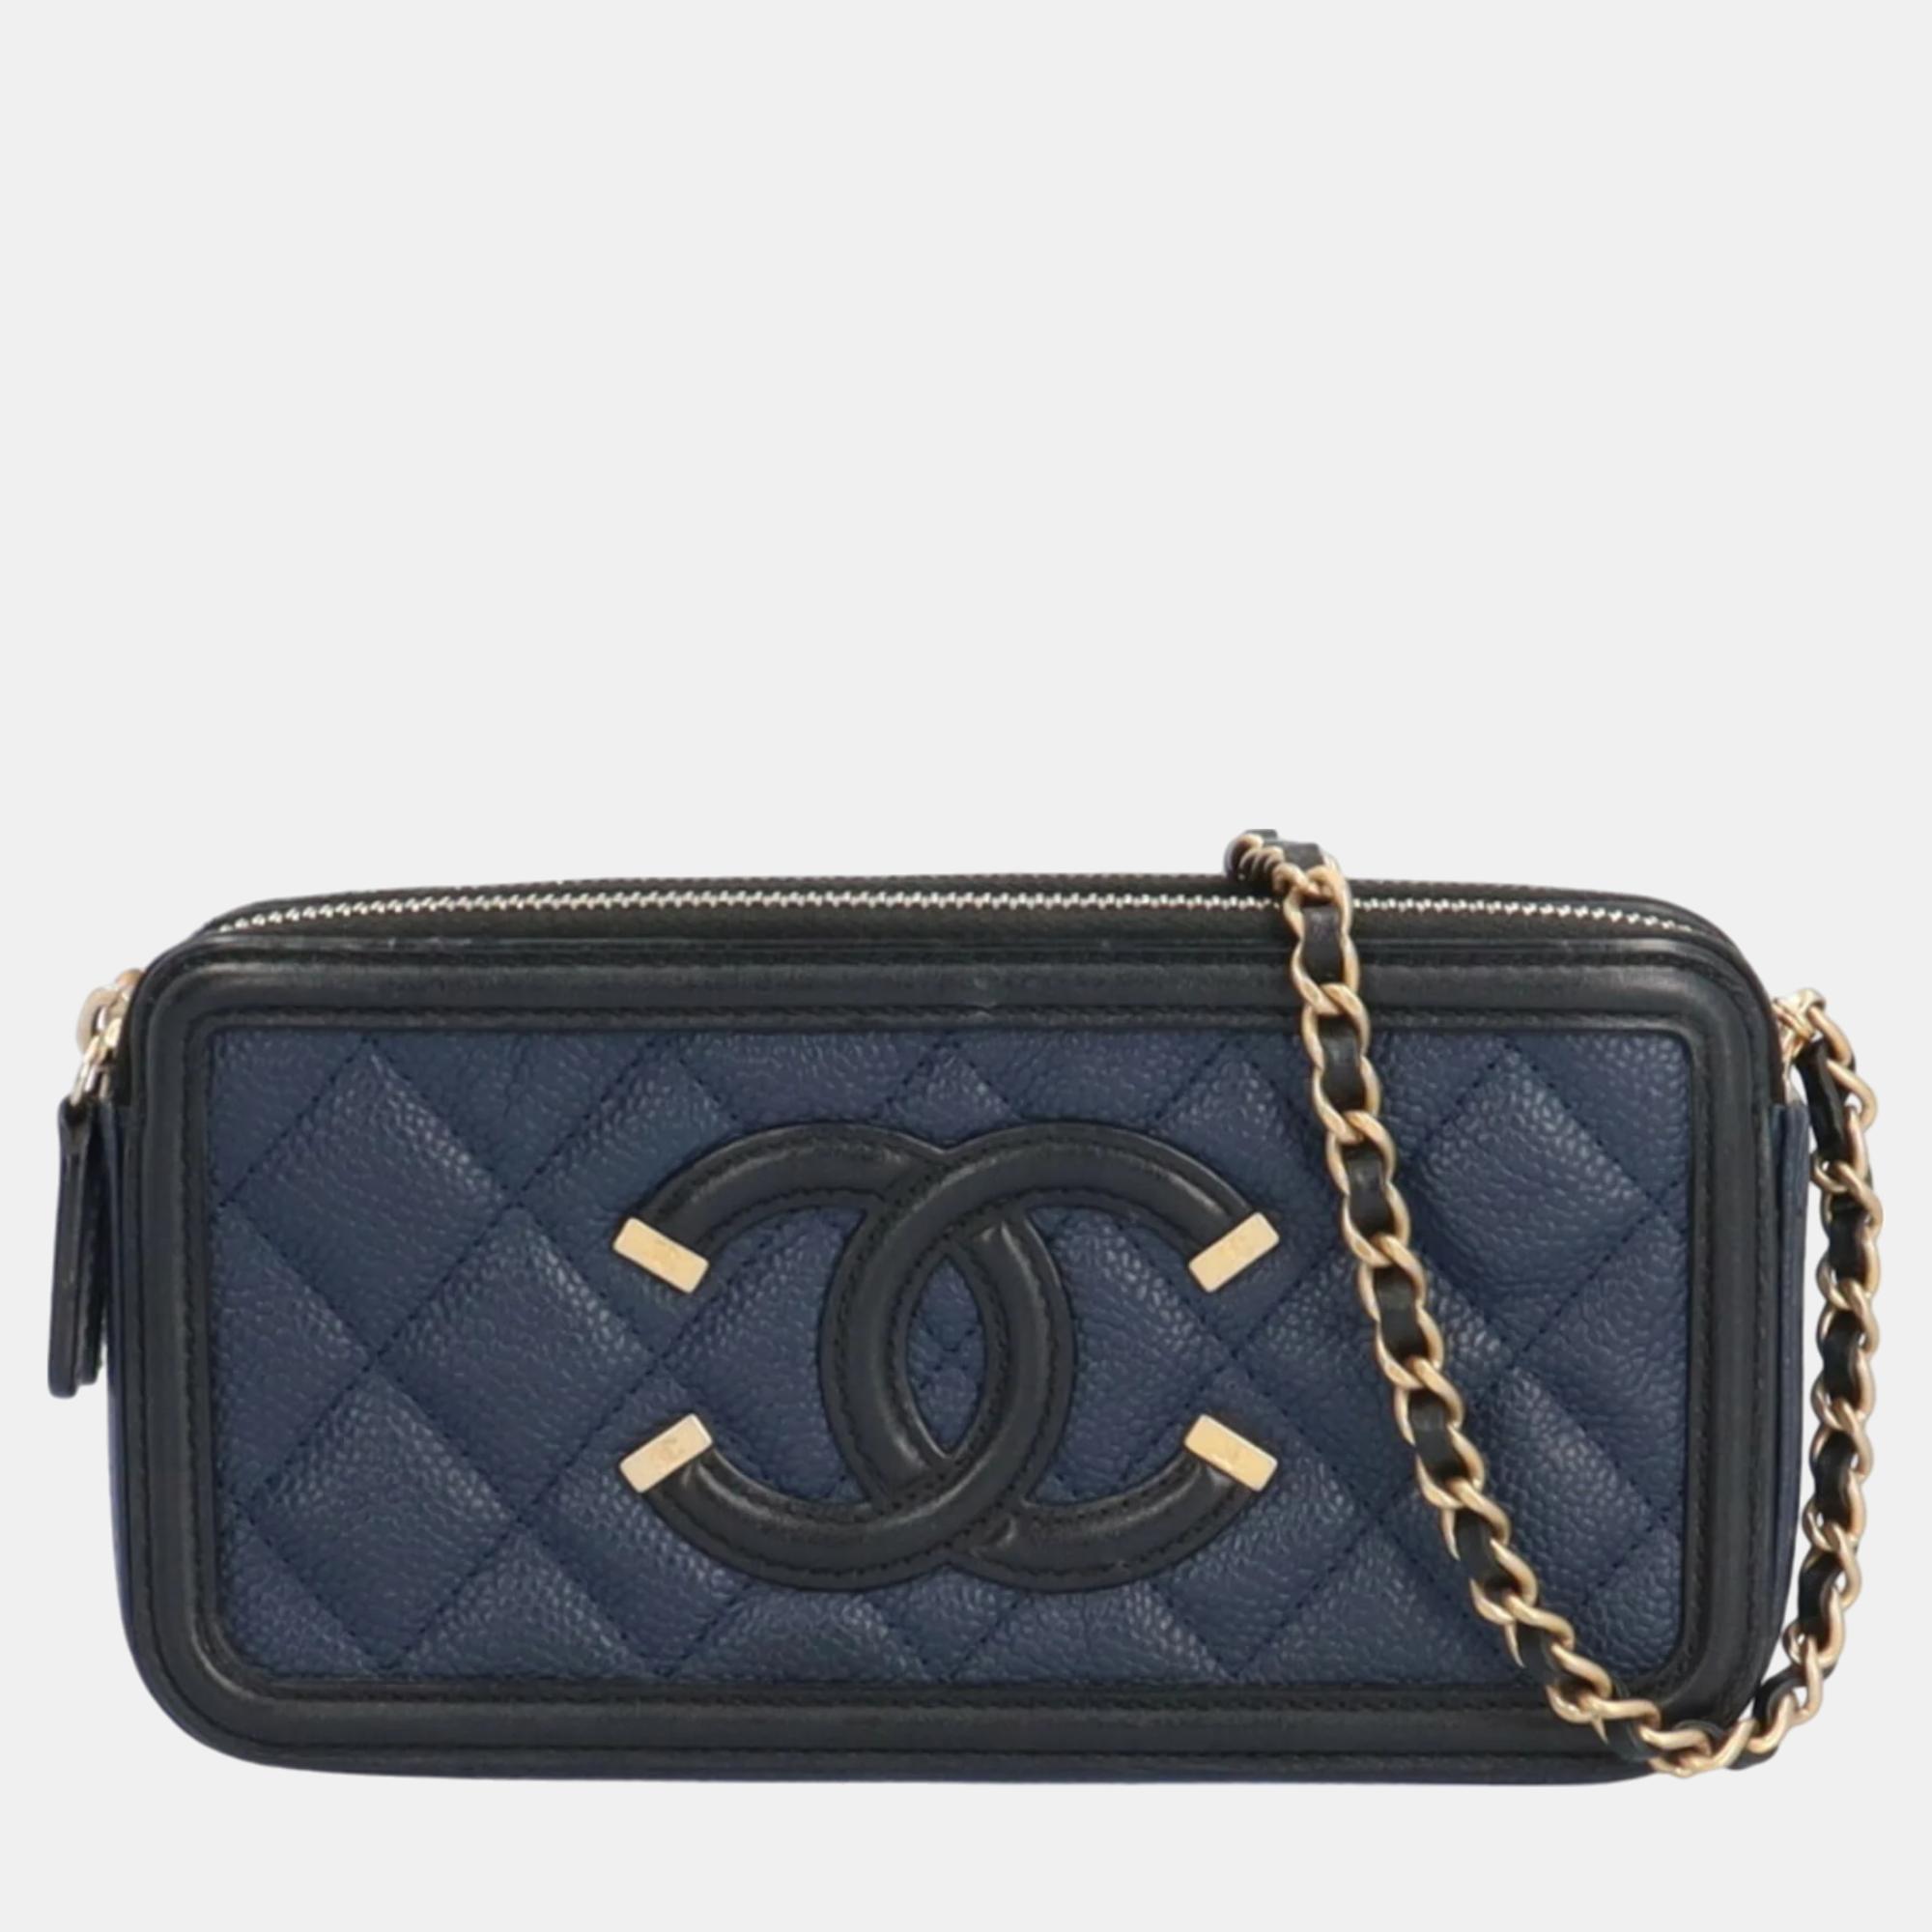 Chanel blue leather cc filigree shoulder bag